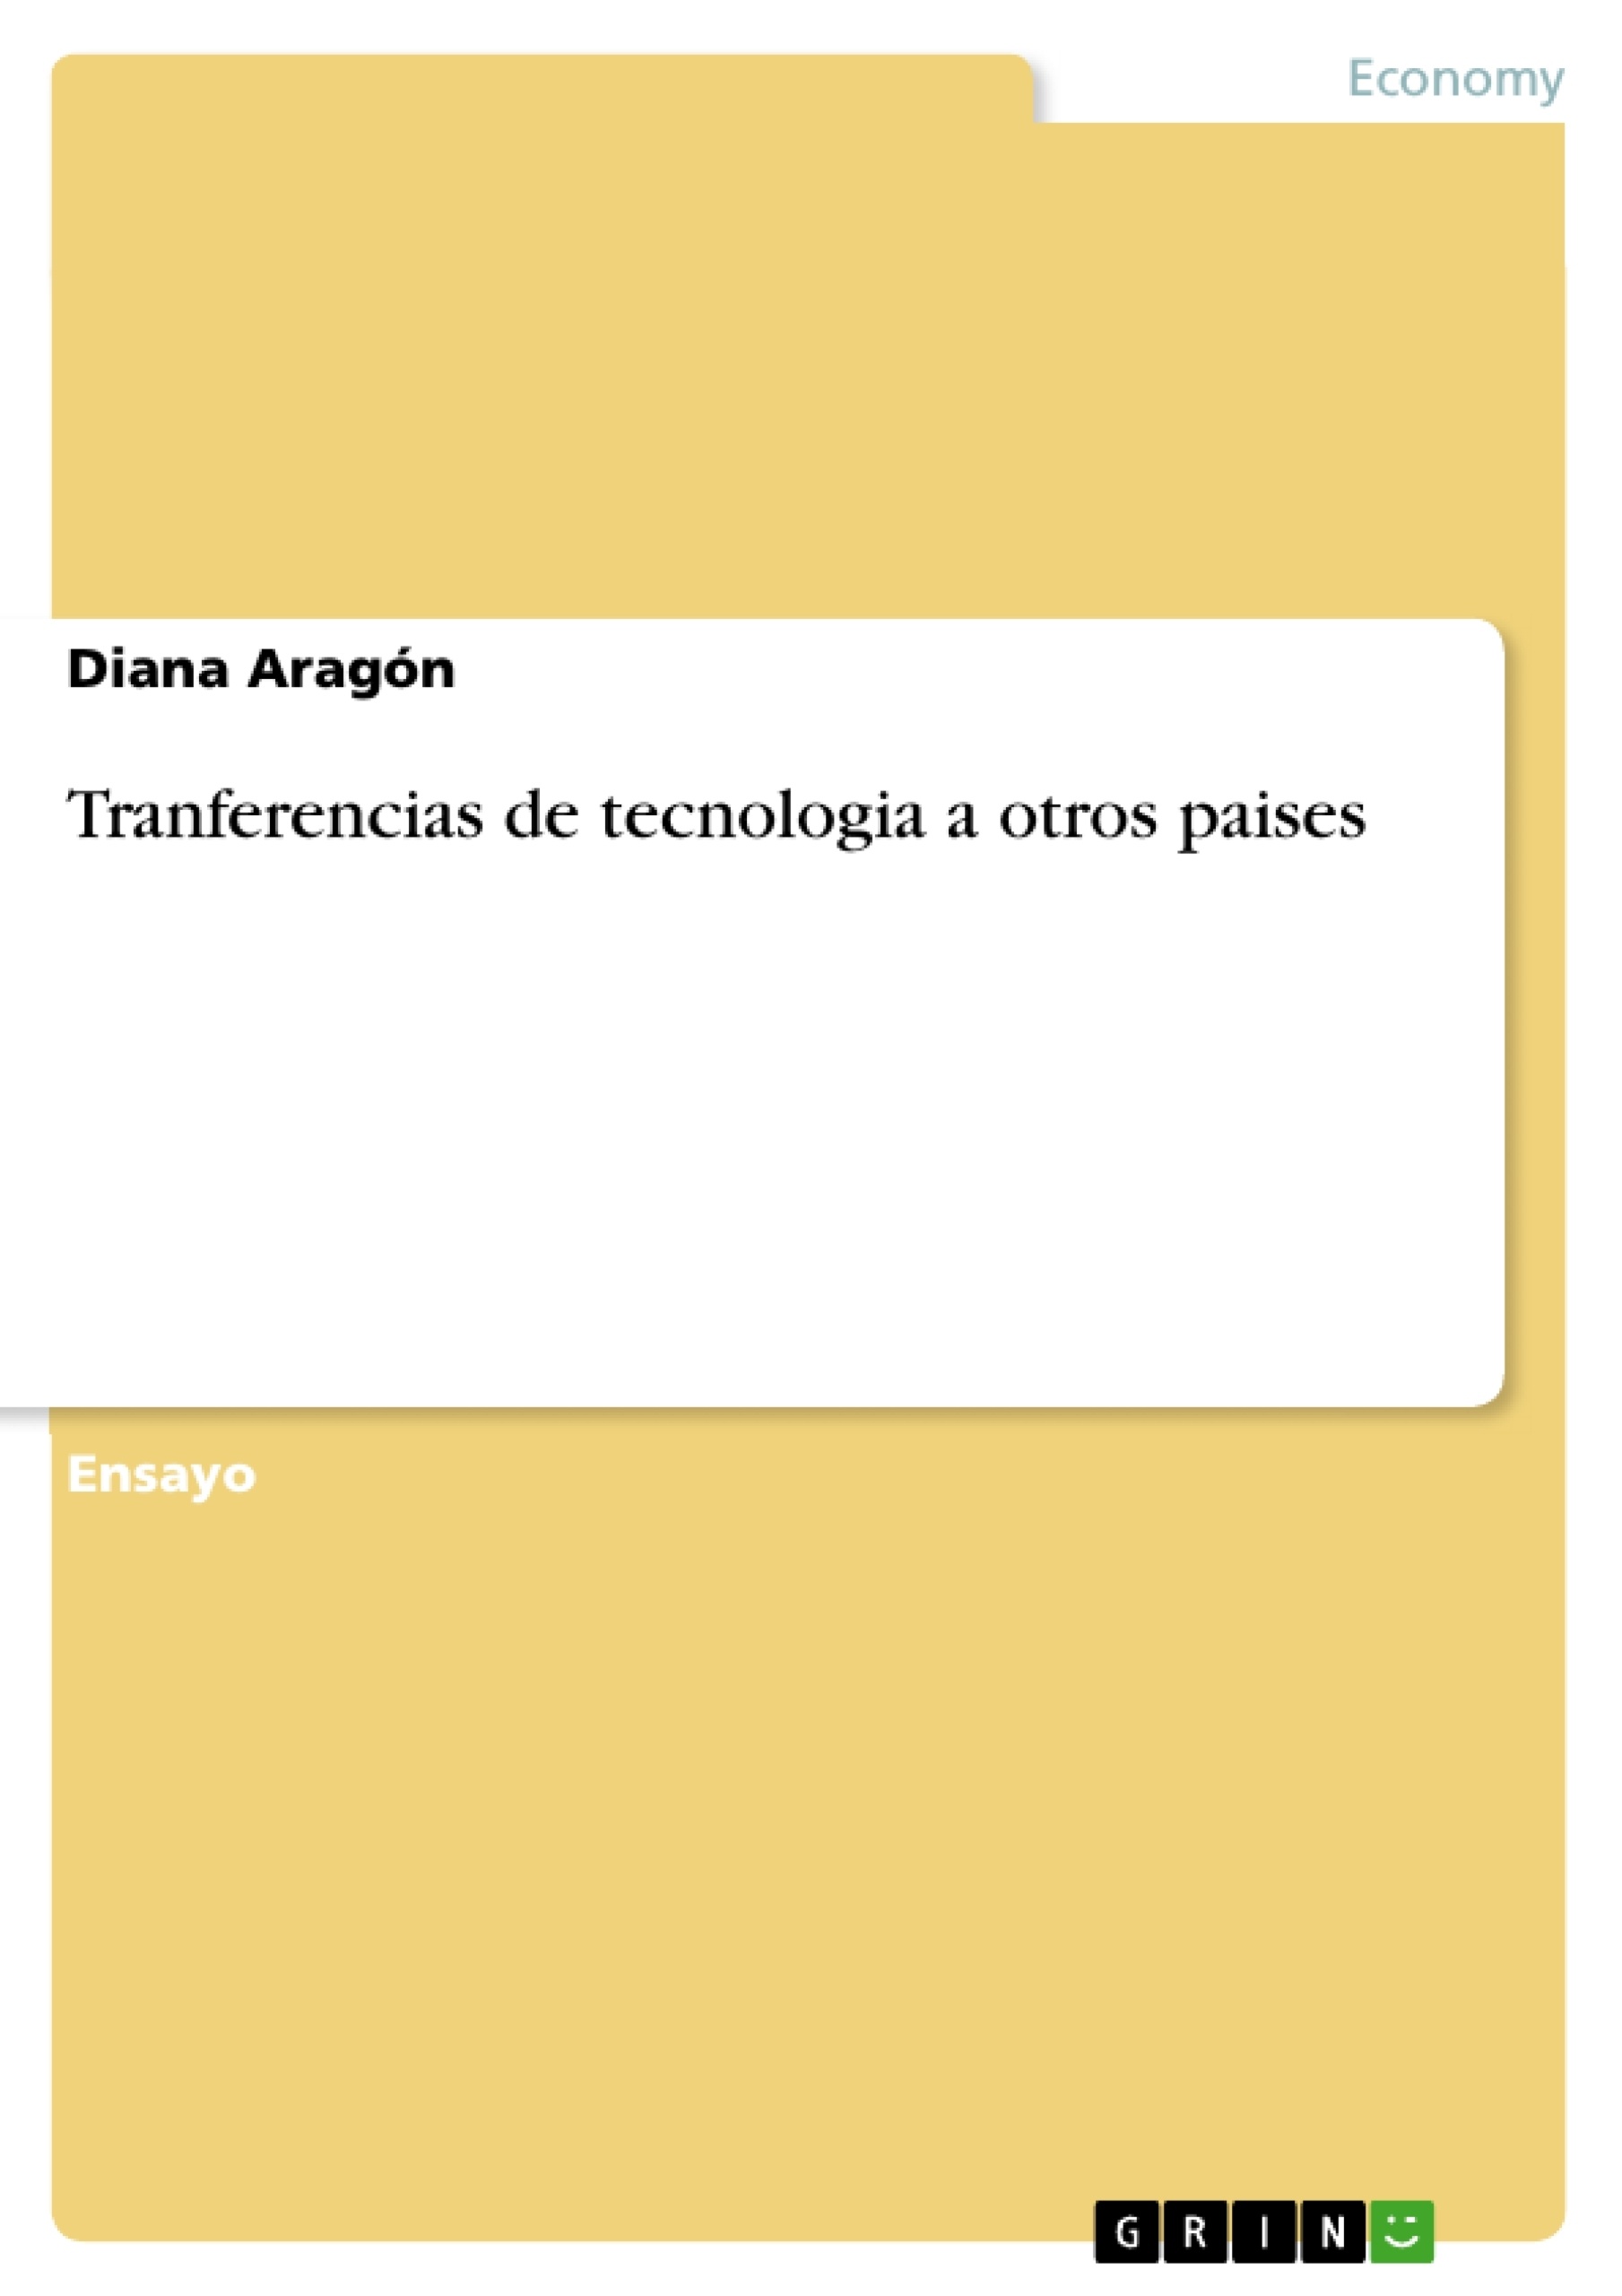 Título: Tranferencias de tecnologia a otros paises